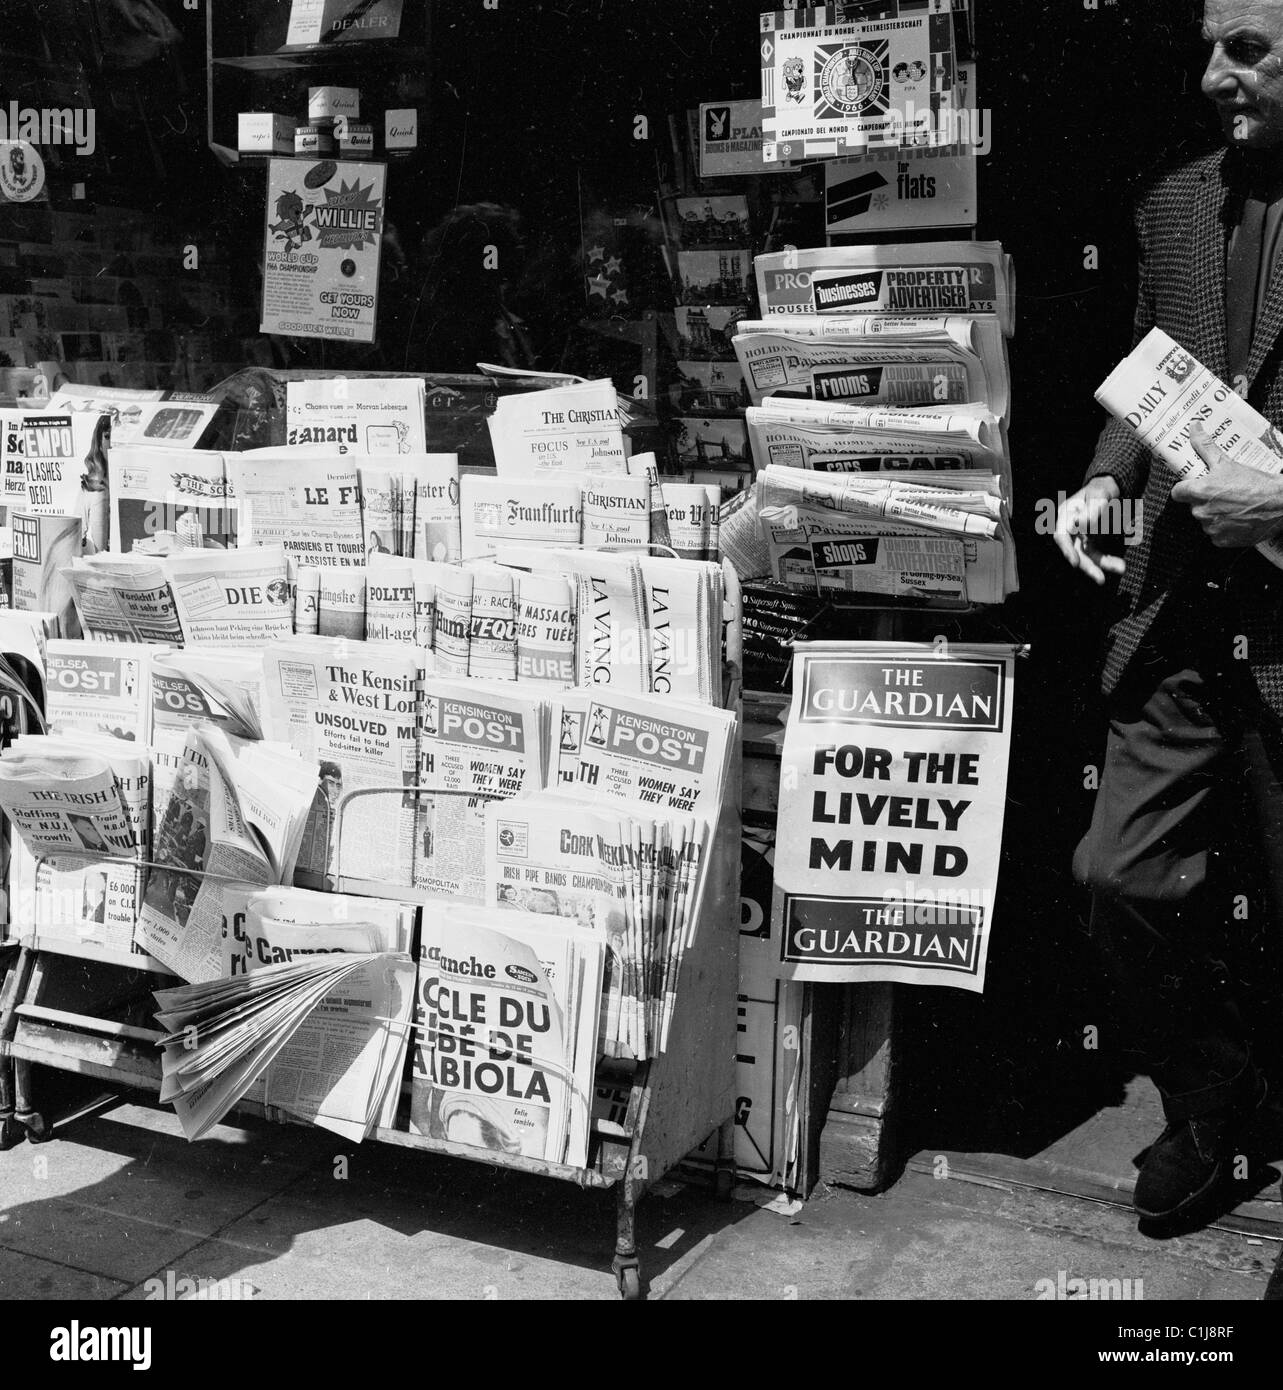 1966, journaux nationaux historiques, britanniques et étrangers exposés devant un agent de presse, lors de la coupe du monde de football en Angleterre. Banque D'Images